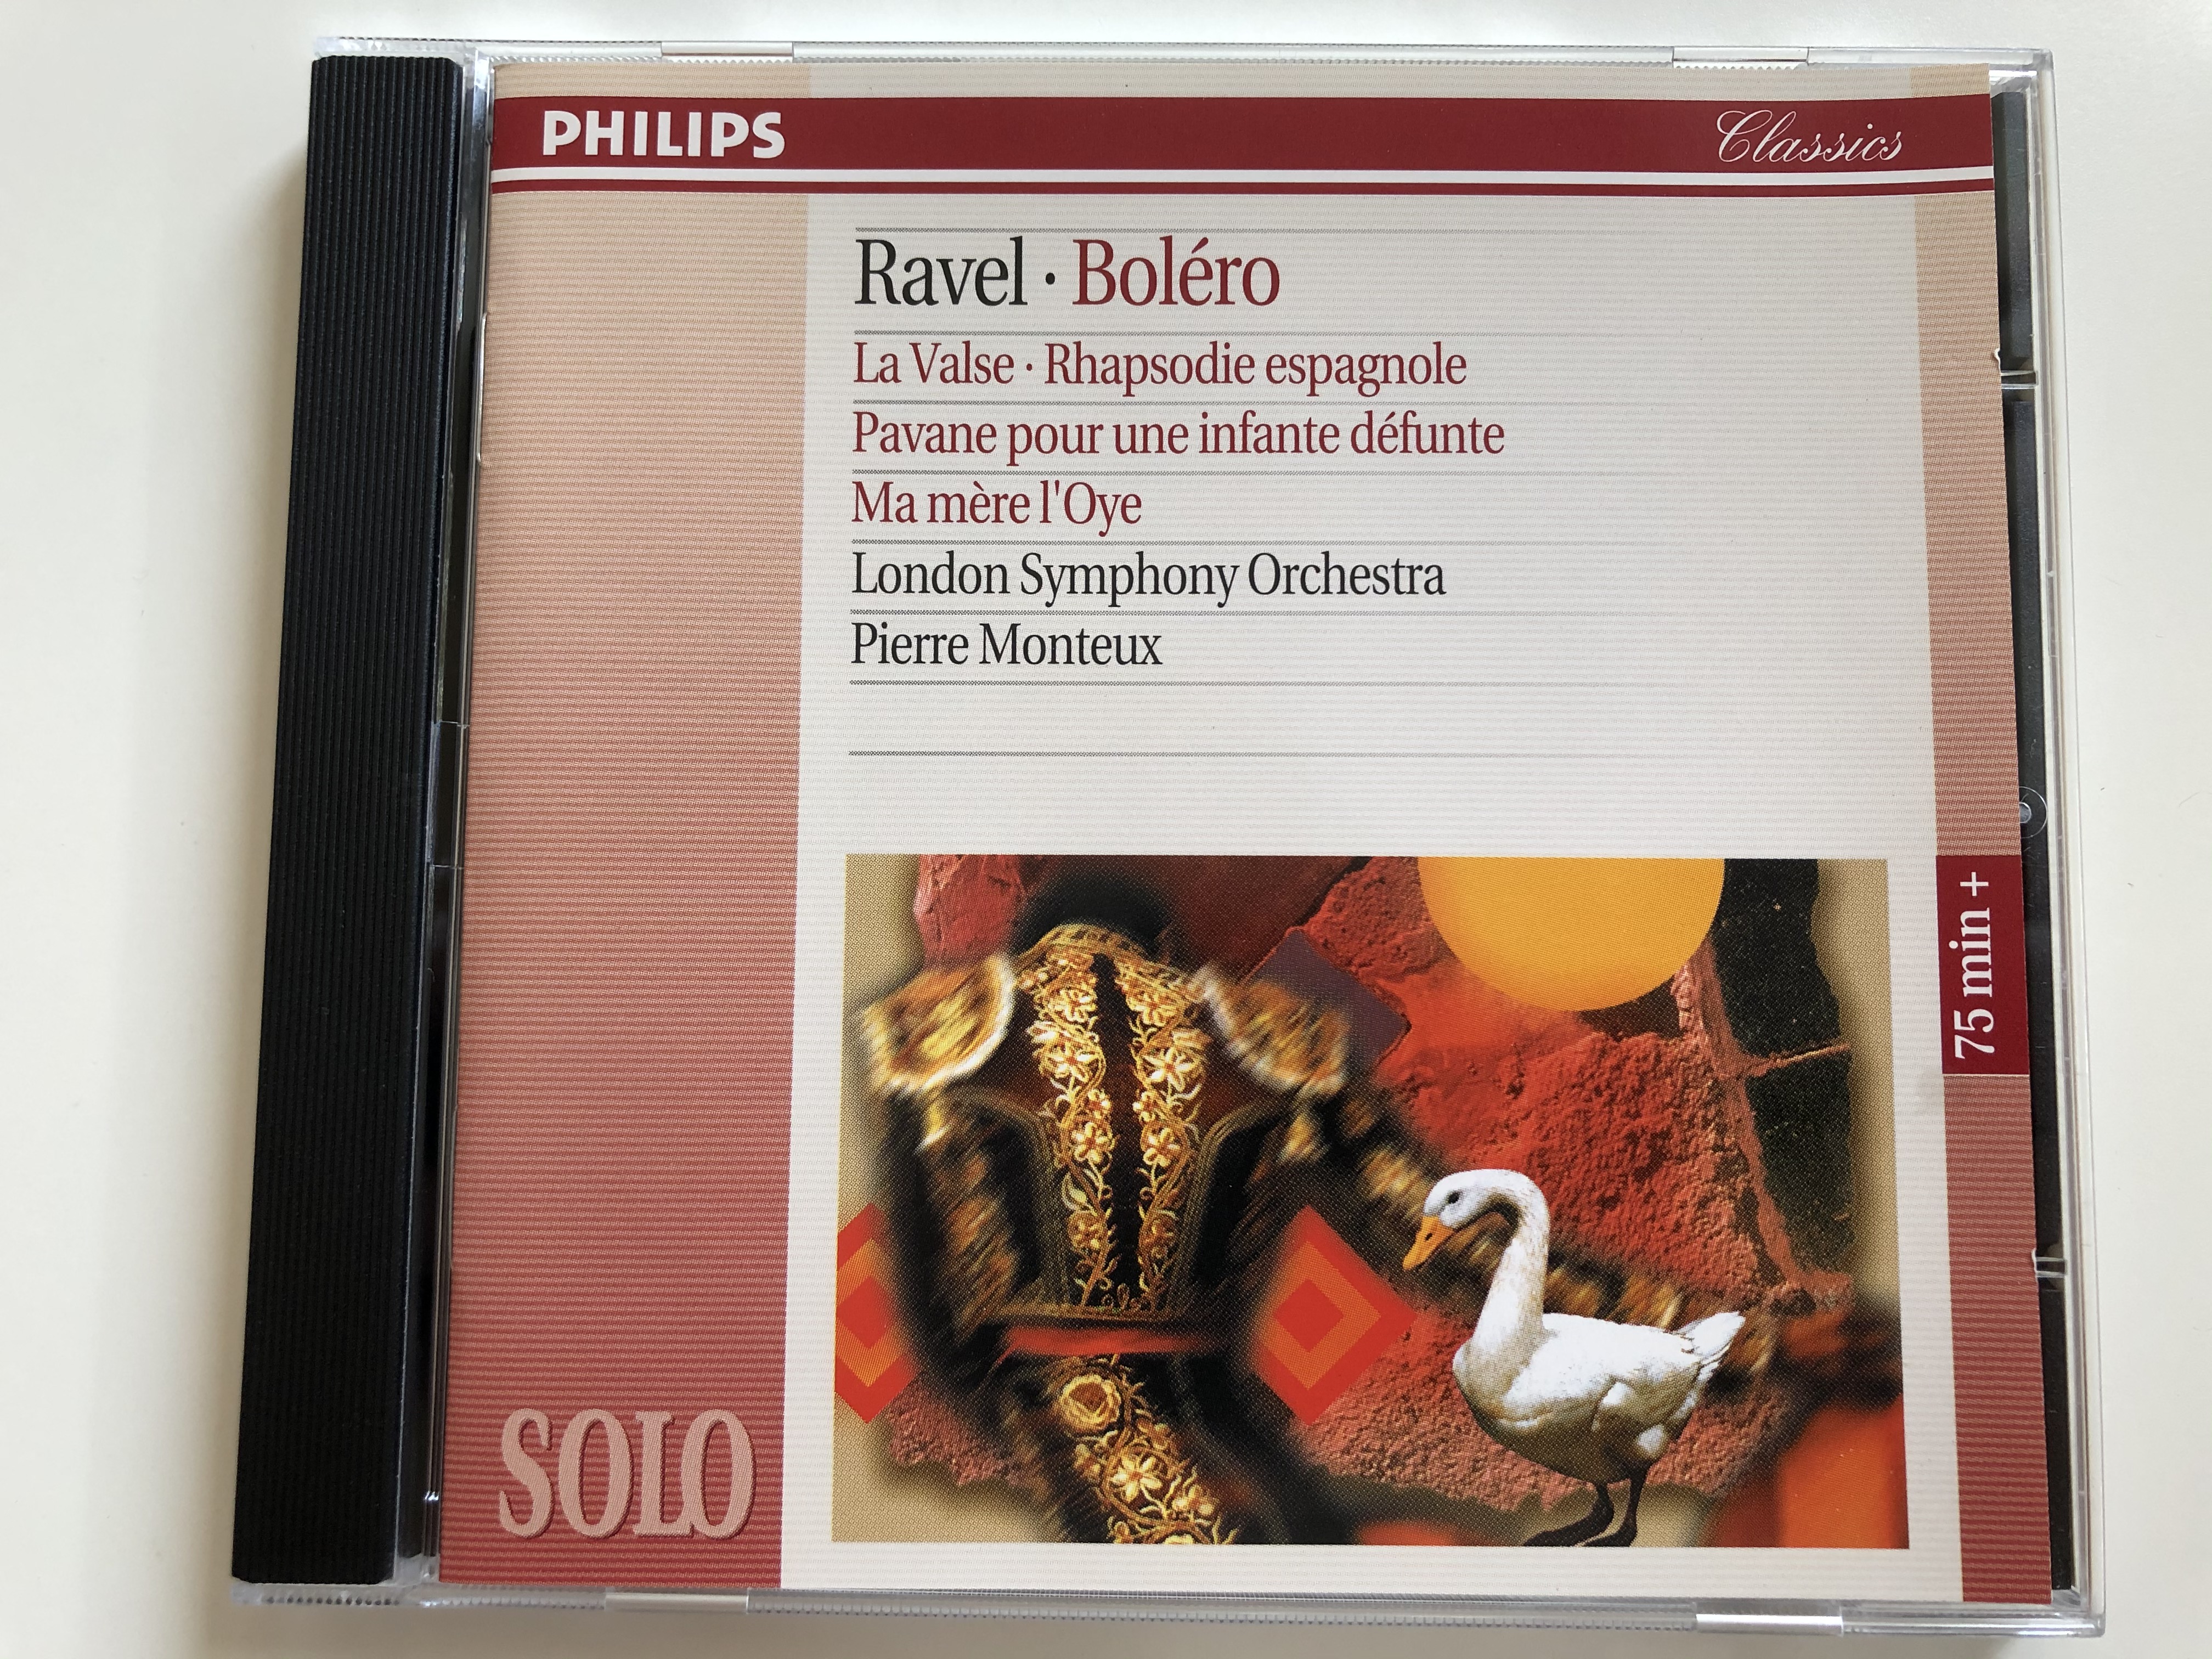 ravel-bolero-la-valse-rhapsodie-espagnole-pavane-pour-une-infante-defunte-ma-mere-l-oye-london-symphony-orchestra-pierre-monteux-philips-audio-cd-1995-442-542-2-1-.jpg